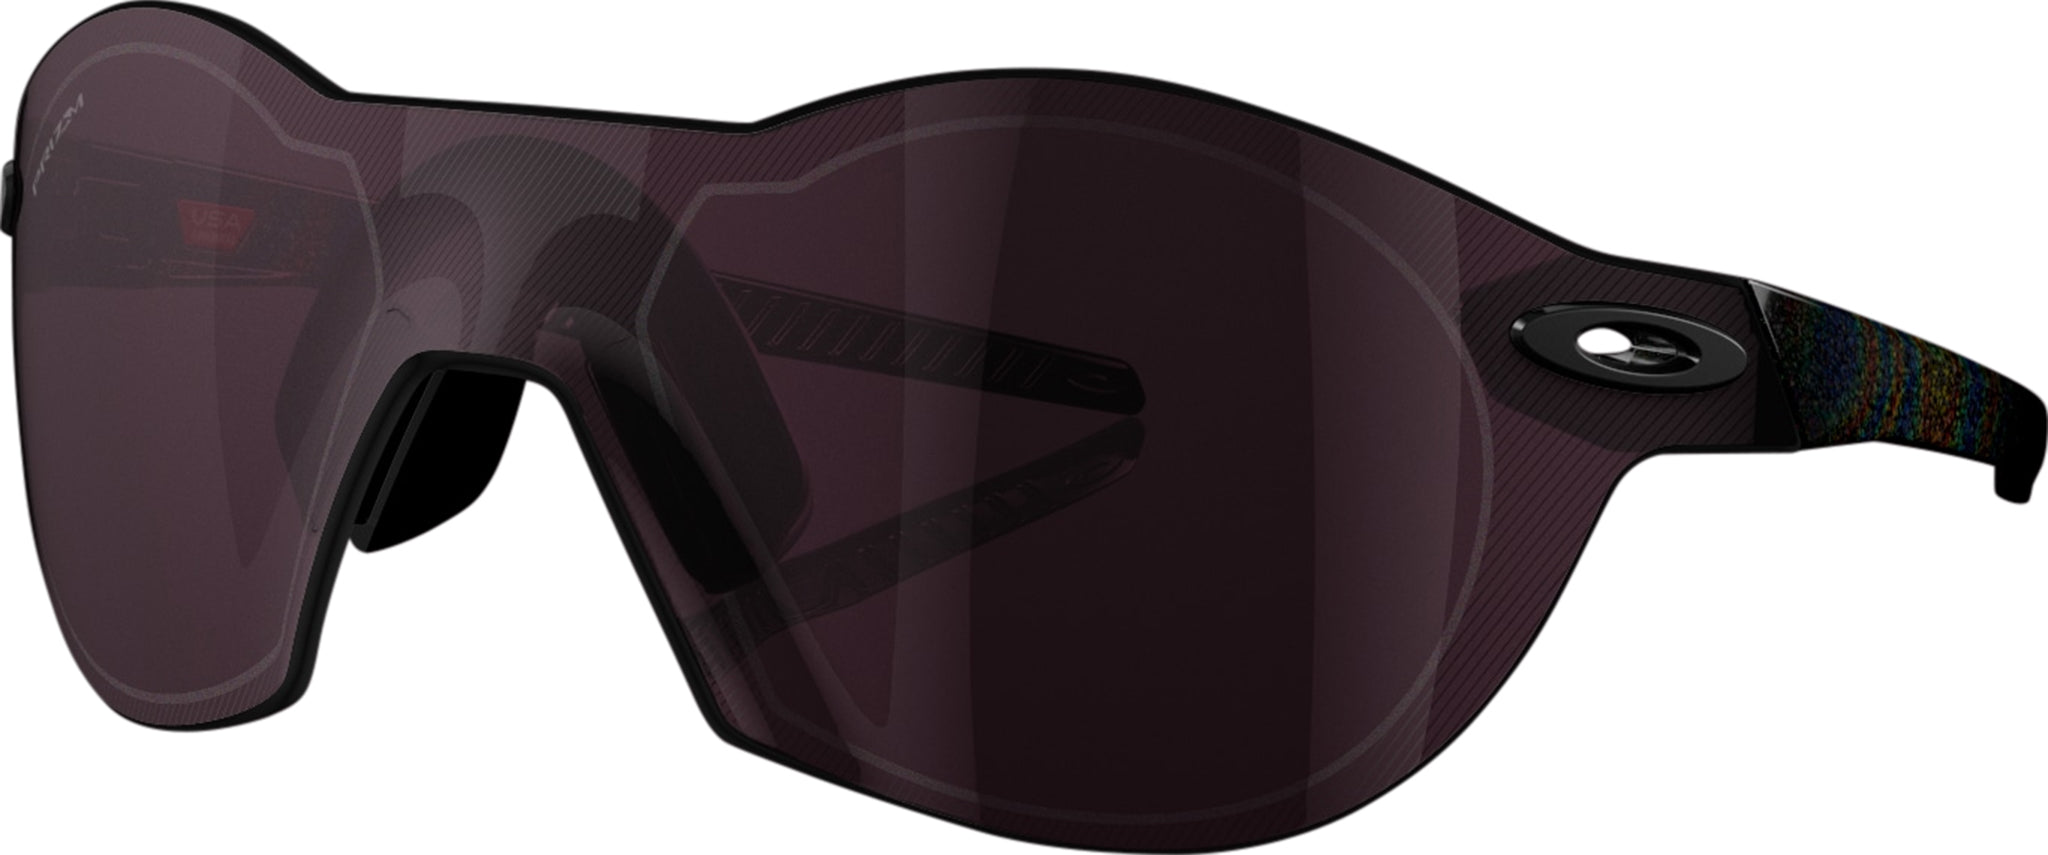 Oakley Re-SubZero Sunglasses - Dark Galaxy - Prizm Road Black Lens - Unisex